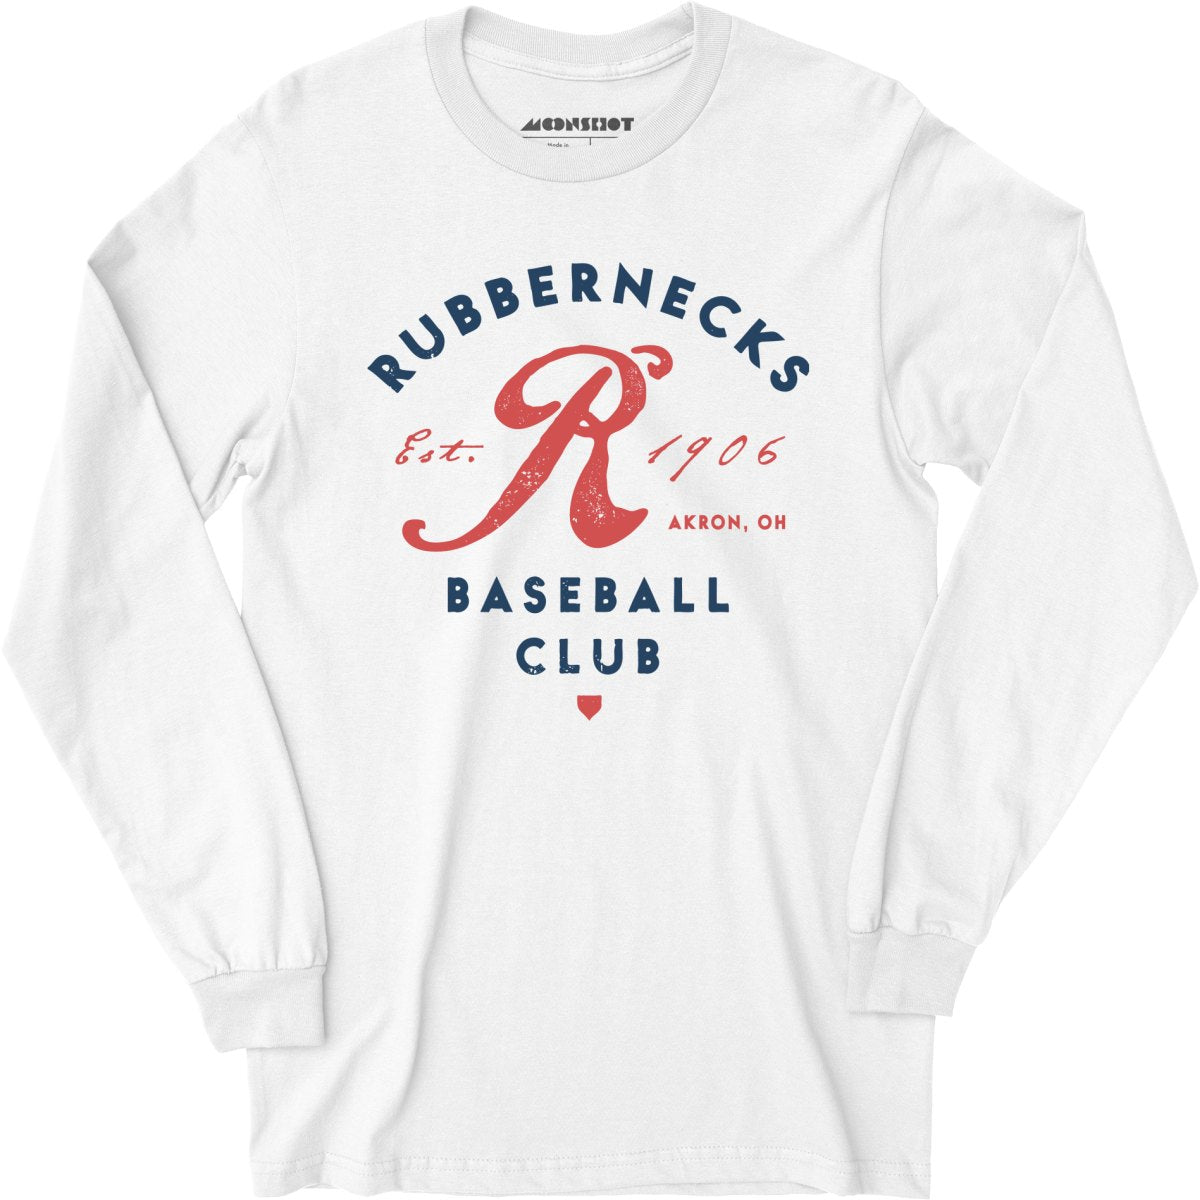 Akron Rubbernecks - Ohio - Vintage Defunct Baseball Teams - Long Sleeve T-Shirt